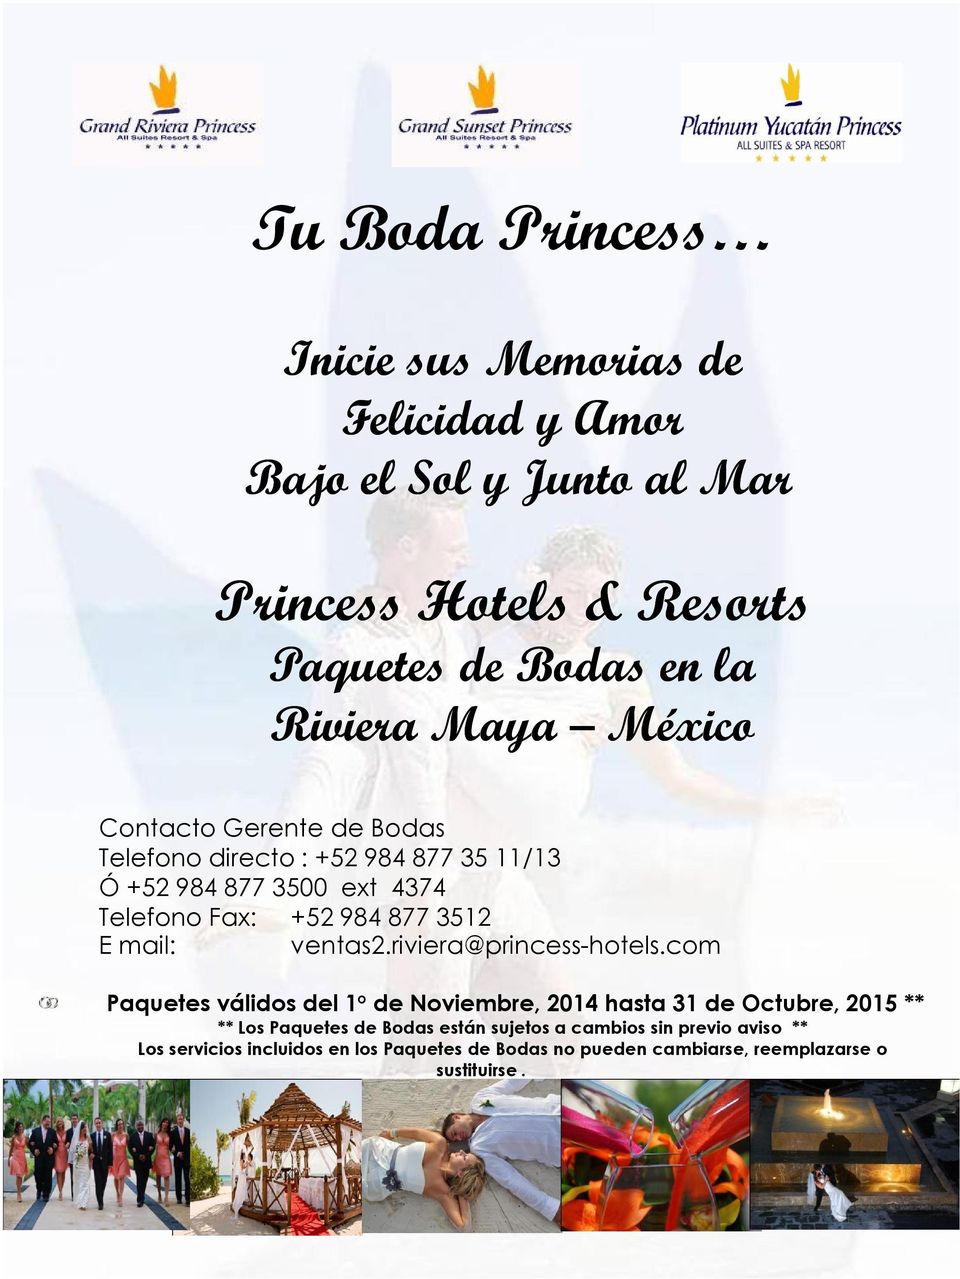 mail: ventas2.riviera@princess-hotels.